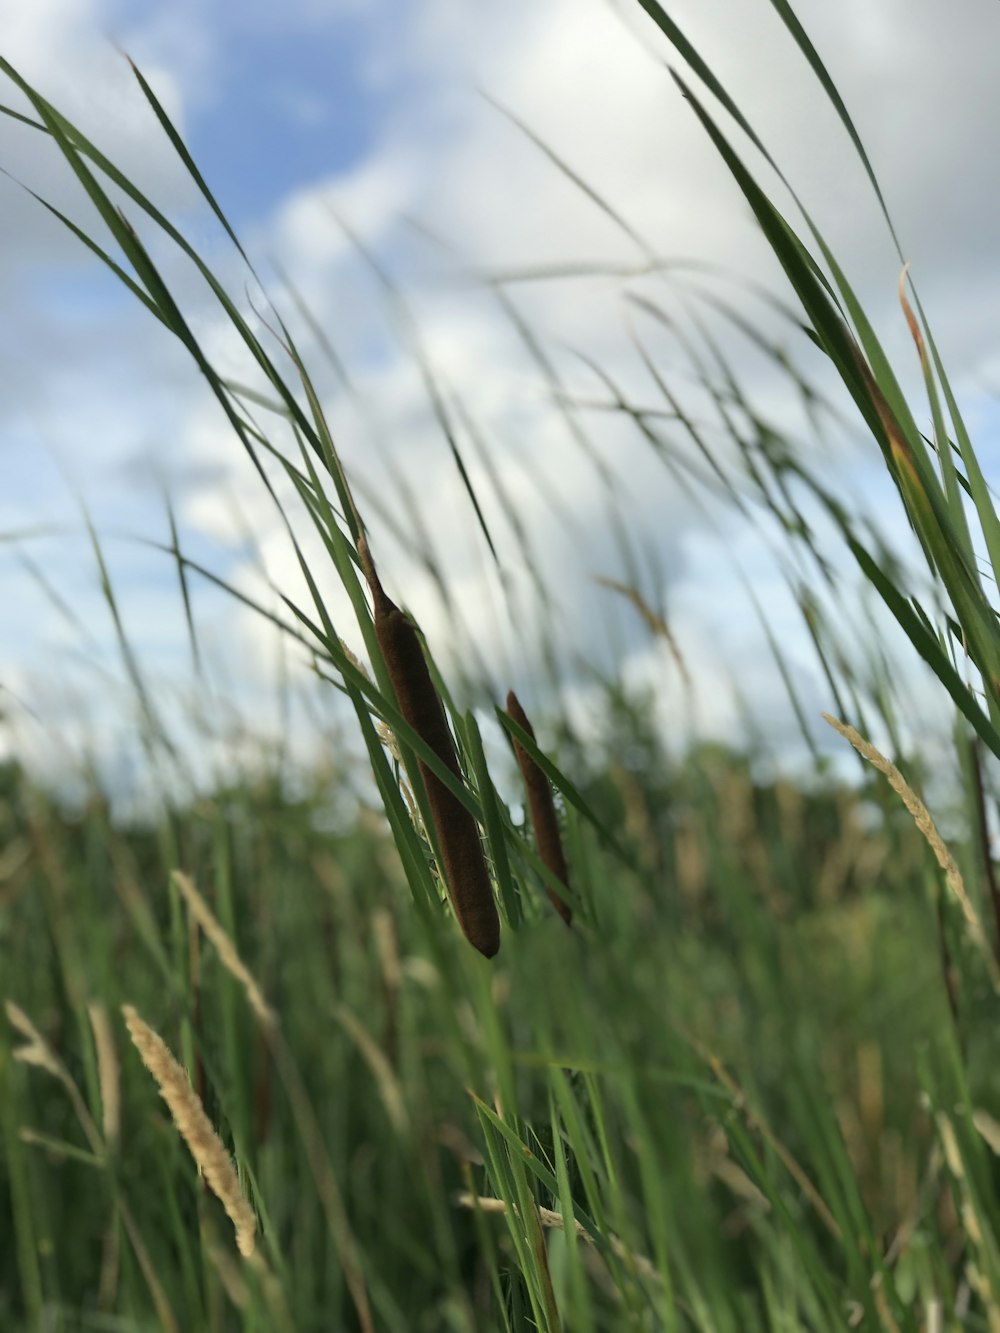 a field of tall green grass under a cloudy blue sky